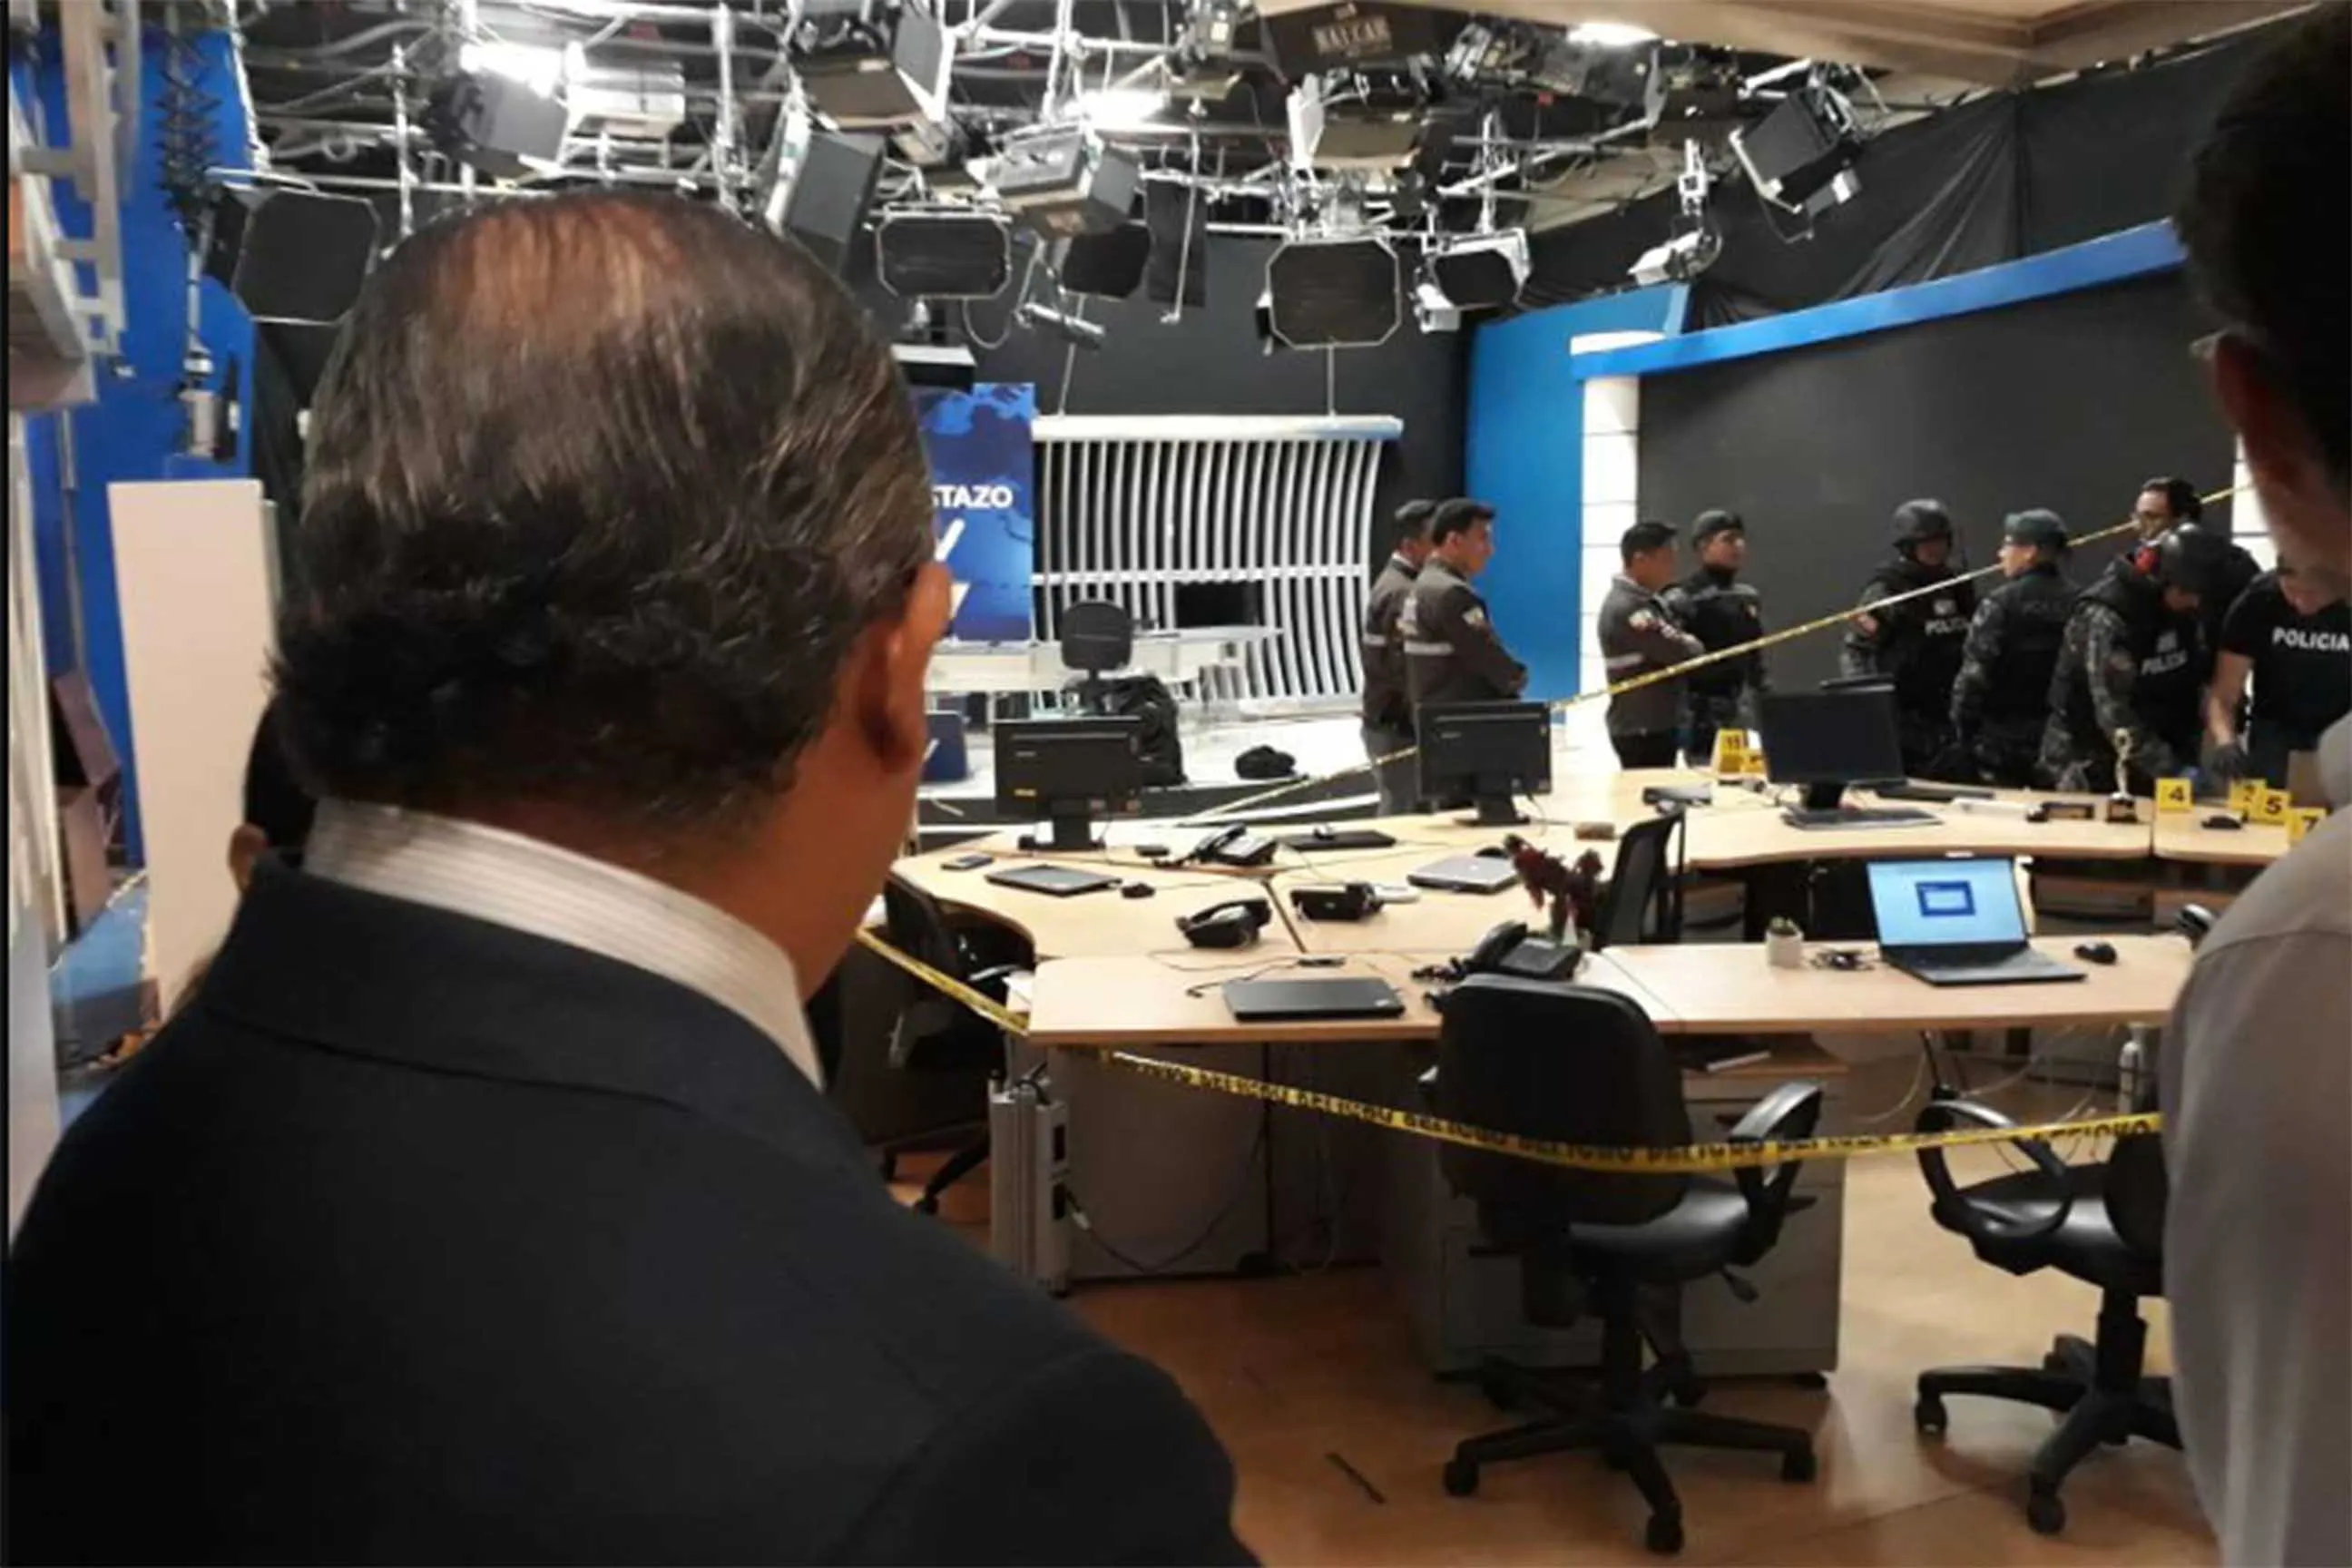 Press / Globo news story